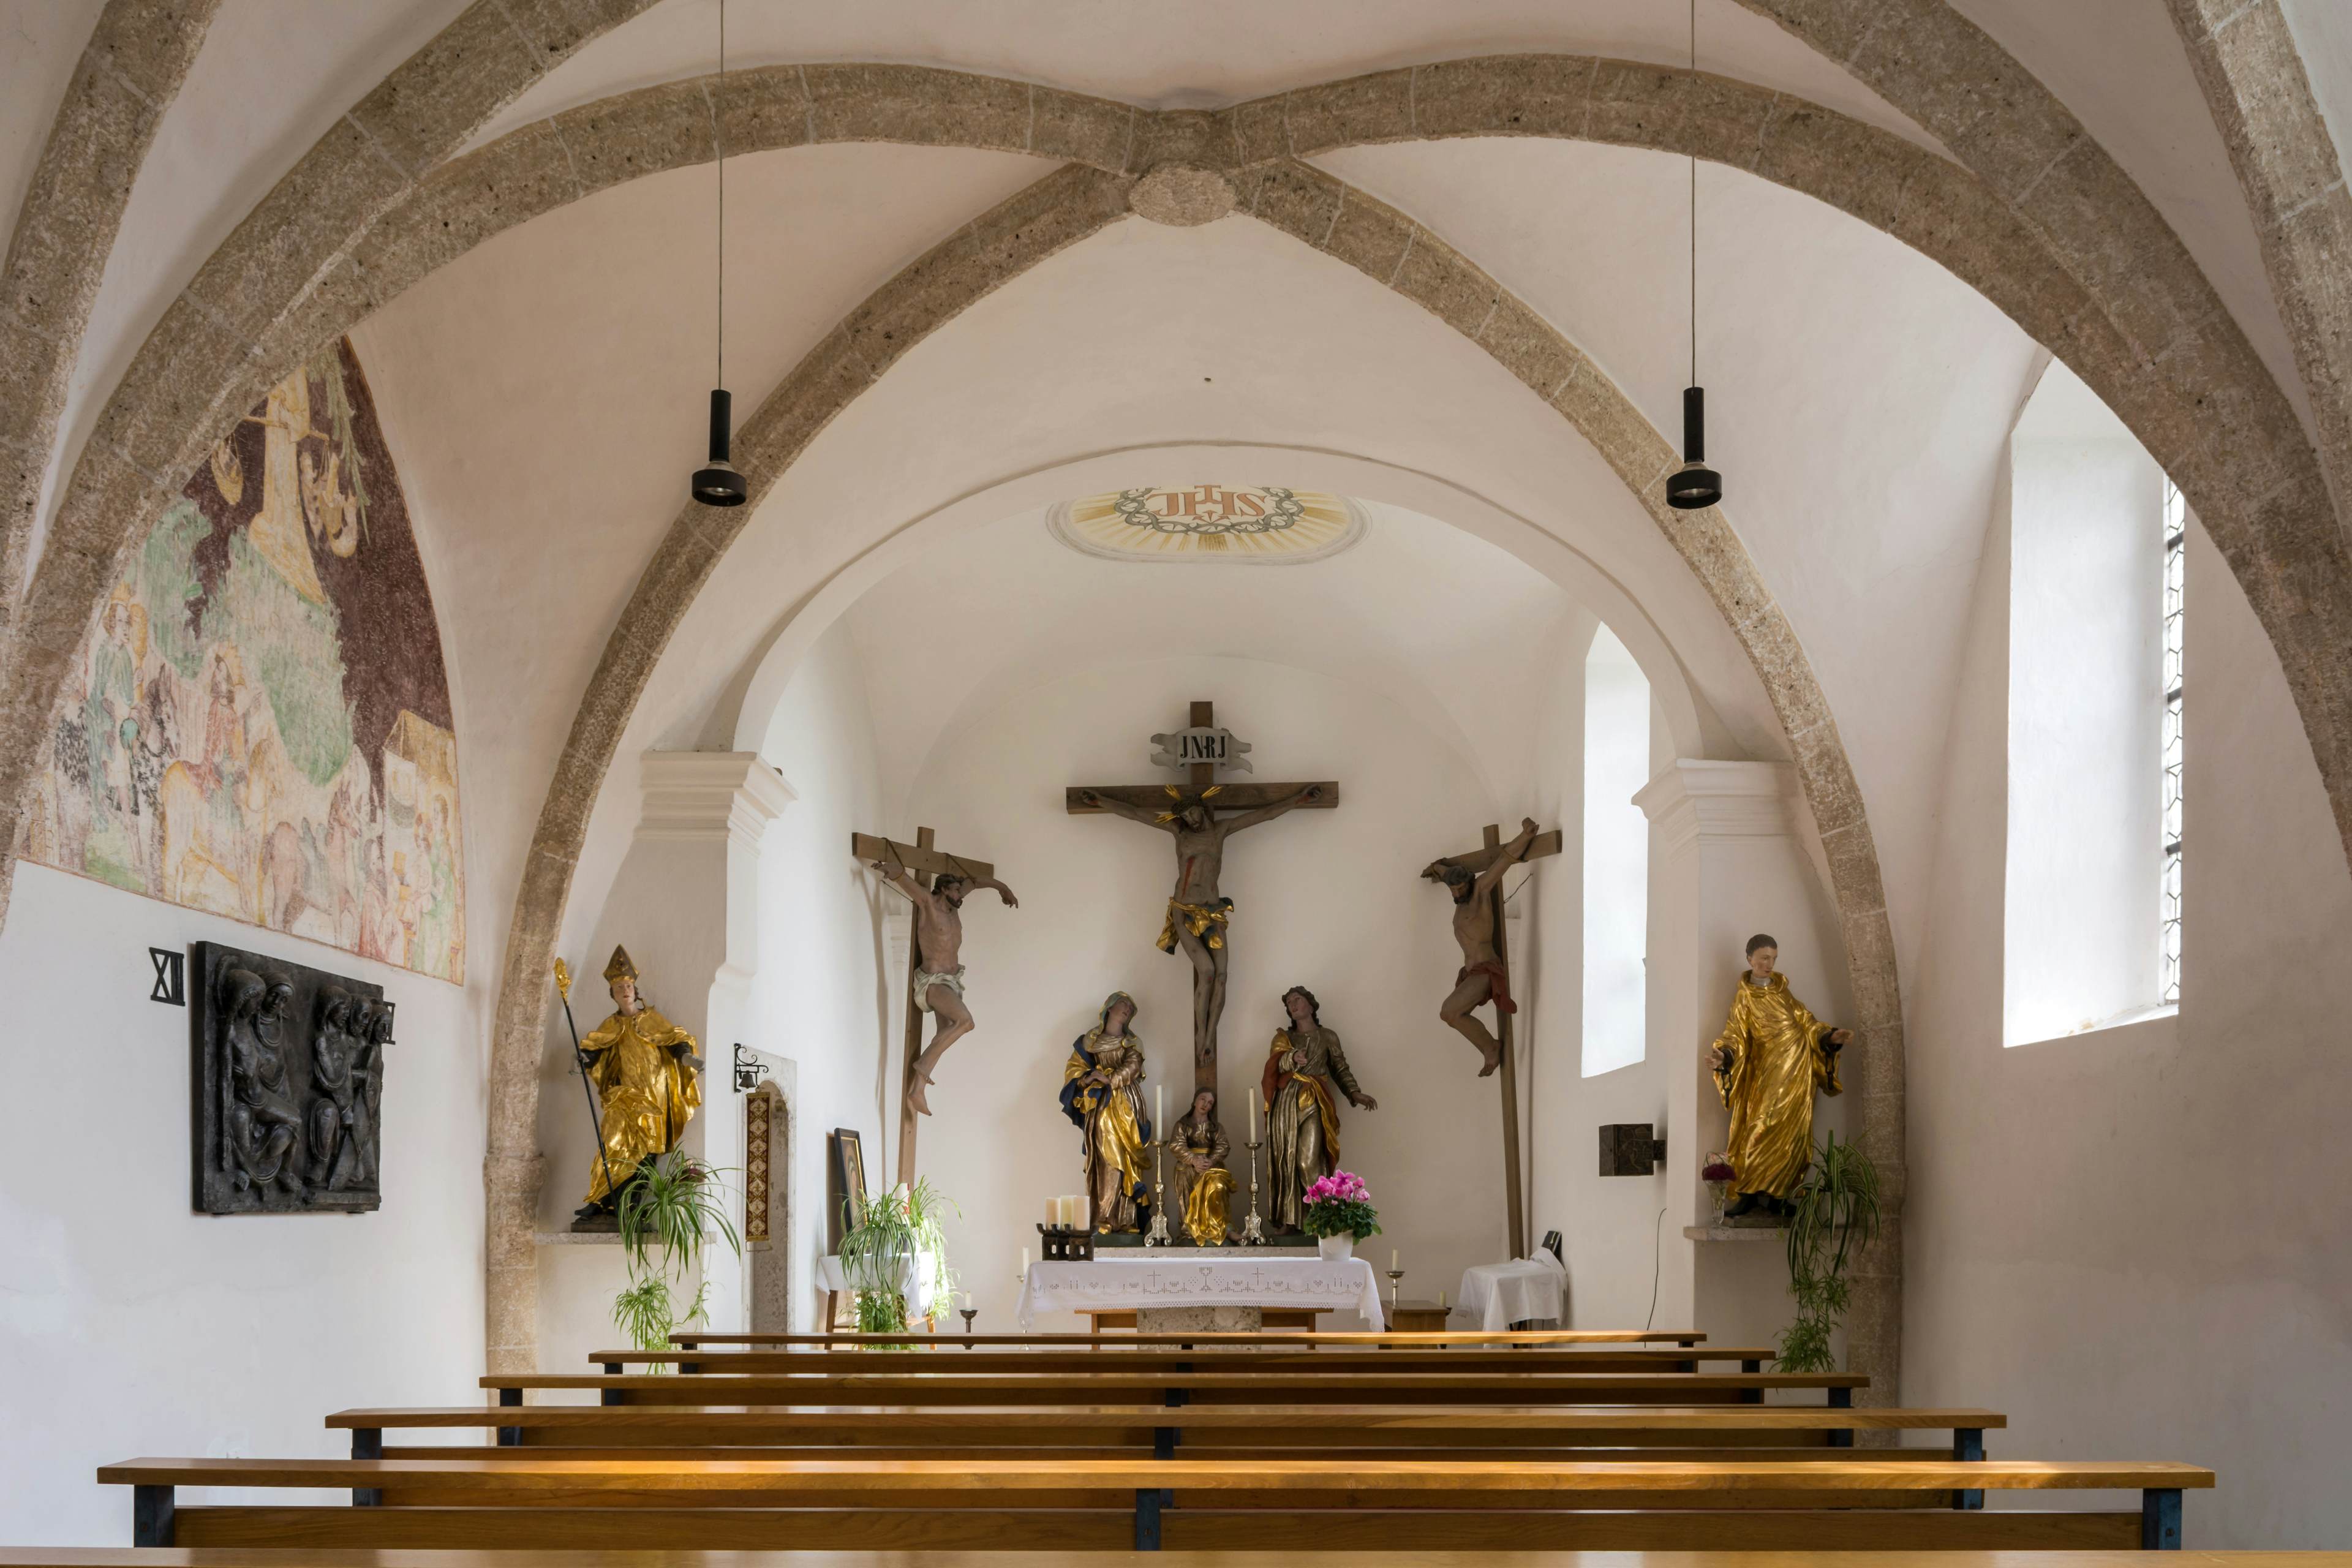 Kalvarienbergkirche